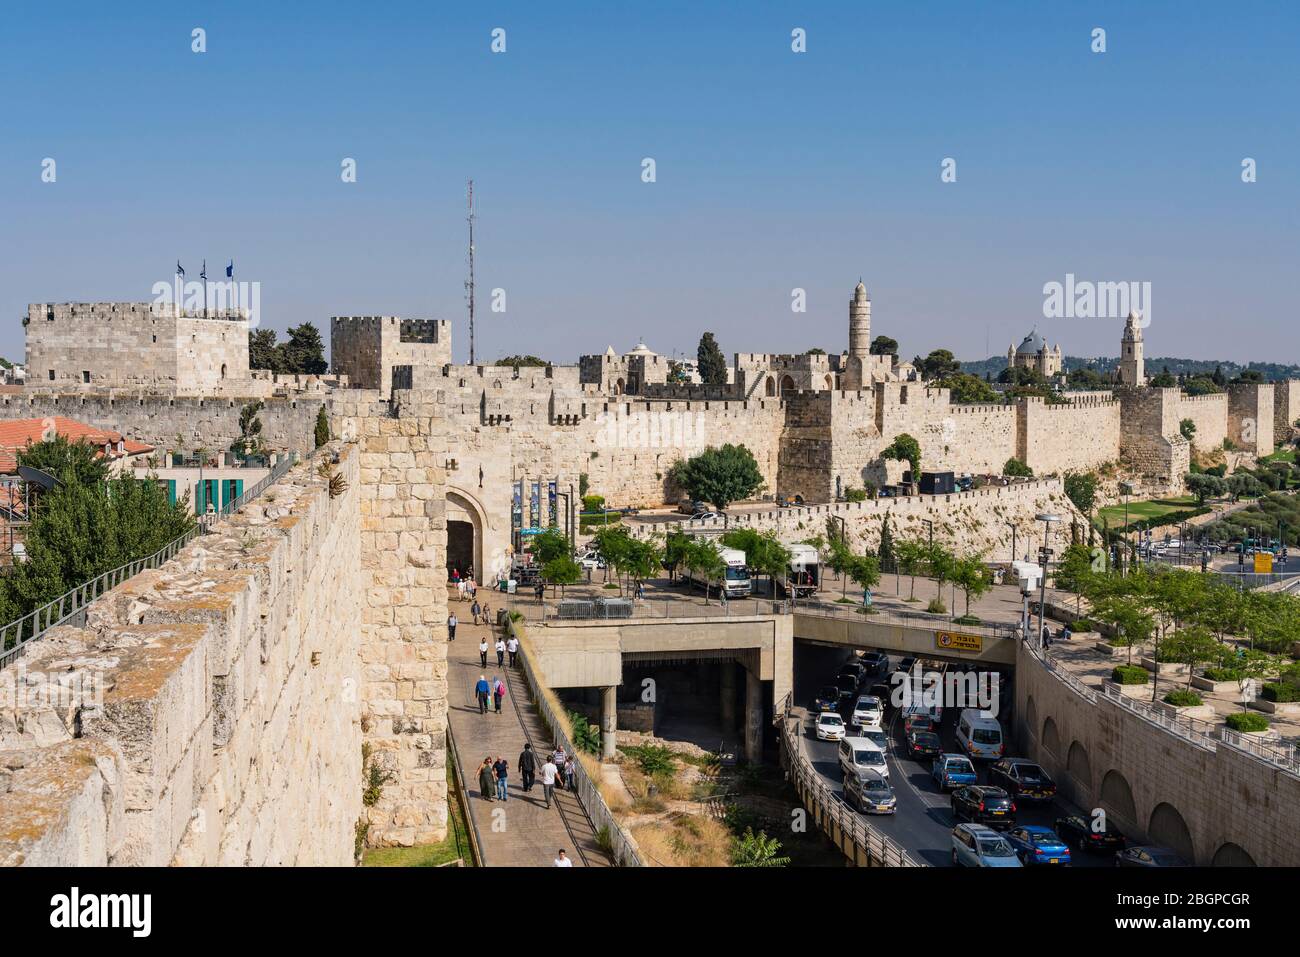 Israel, Jerusalem, Armenisches Viertel, die Stadtmauer von Jerusalem in der Nähe des Jaffa-Tores mit dem Turm von Phasael links und dem Minarett des Turms von David oder der Zitadelle in der Mitte. Rechts ist die Kirche und der Glockenturm der Dormition Abtei auf dem Berg Zion, außerhalb der Mauern. Die Altstadt von Jerusalem und ihre Mauern ist ein UNESCO-Weltkulturerbe. Stockfoto